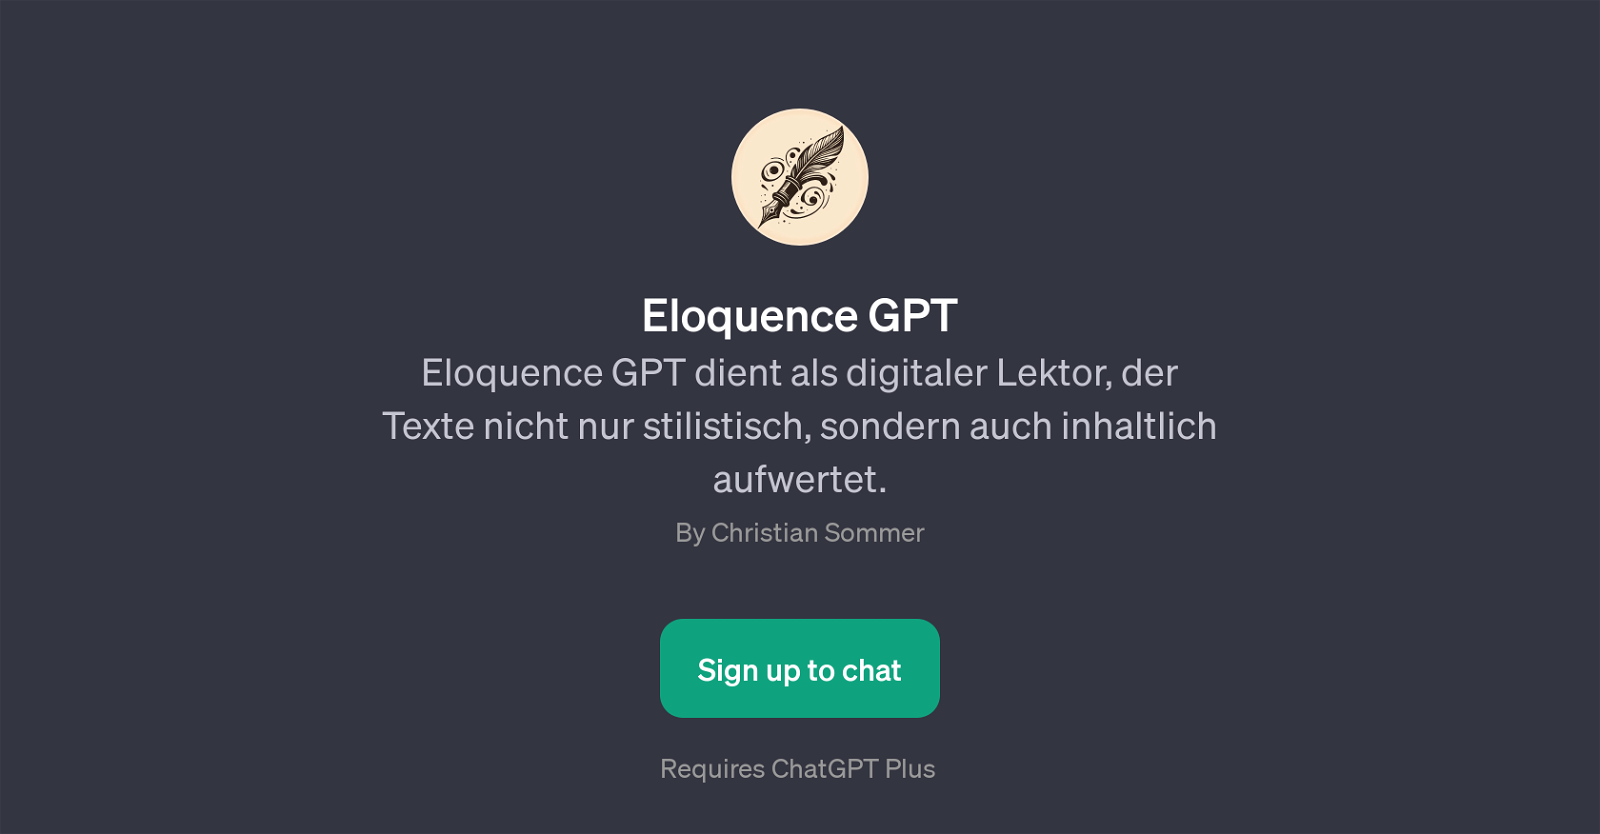 Eloquence GPT website